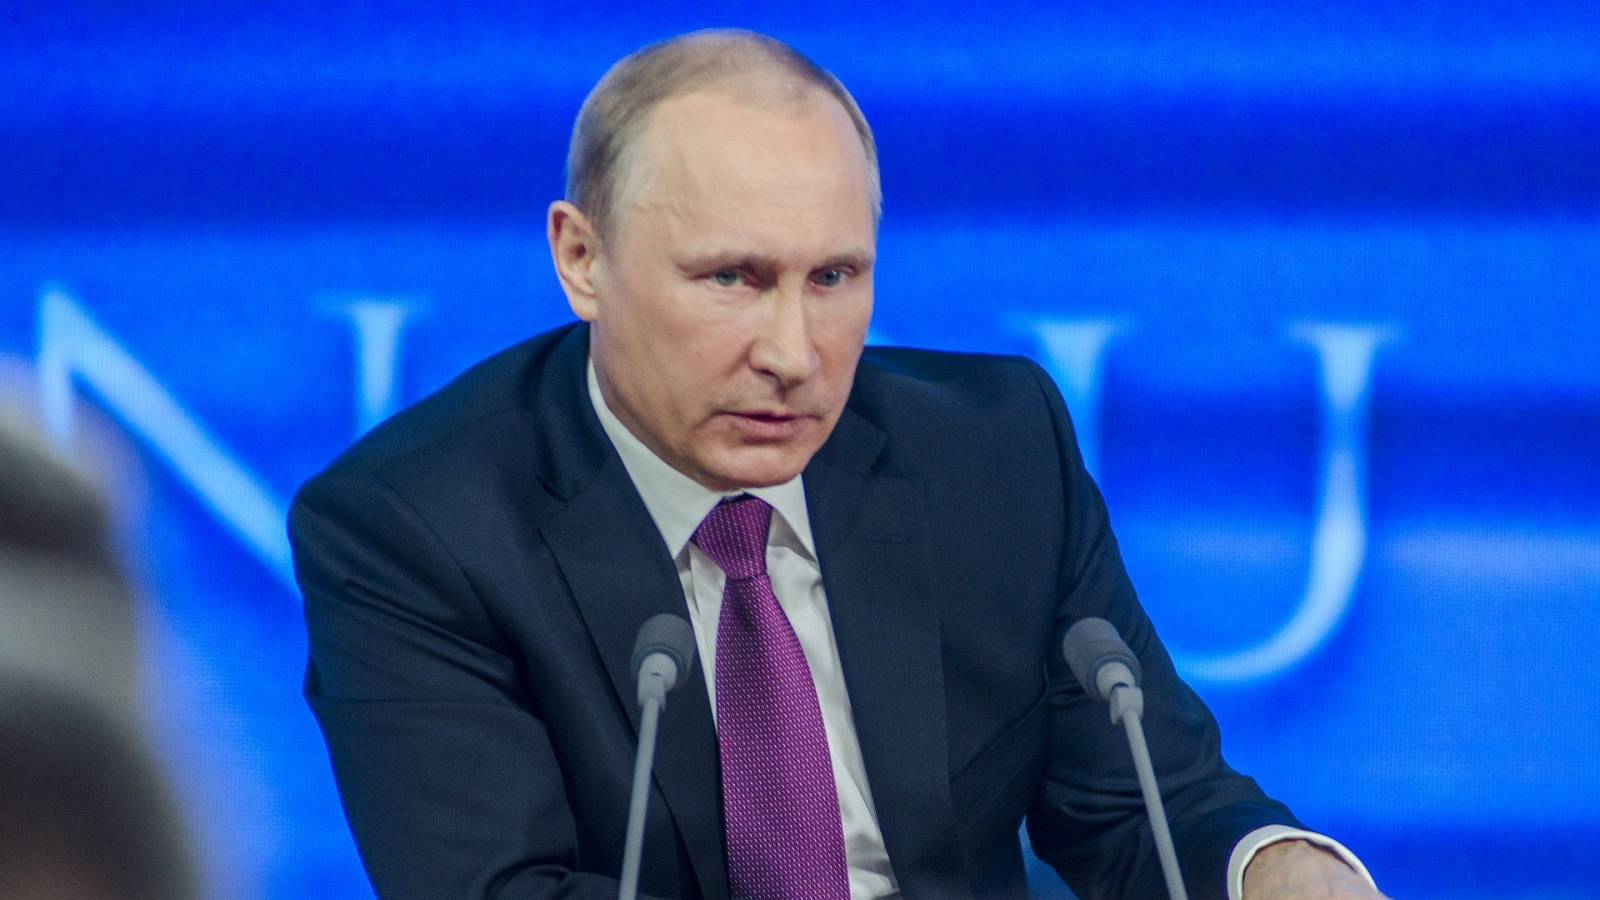 Vladimir Poetin Het Westen veroorzaakt een grote economische crisis